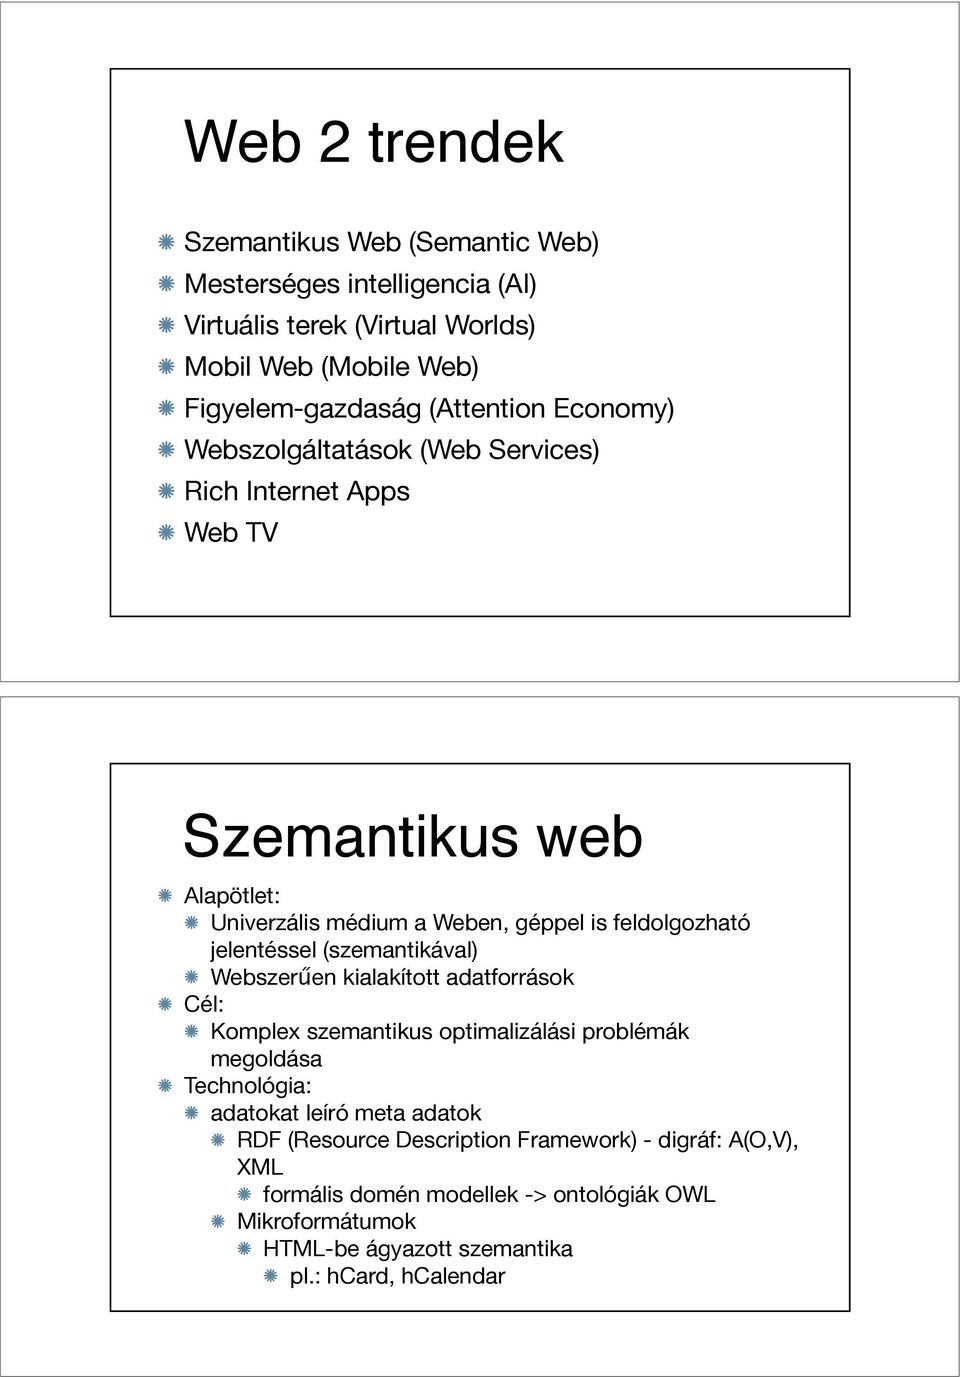 jelentéssel (szemantikával) Webszer"en kialakított adatforrások Cél: Komplex szemantikus optimalizálási problémák megoldása Technológia: adatokat leíró meta